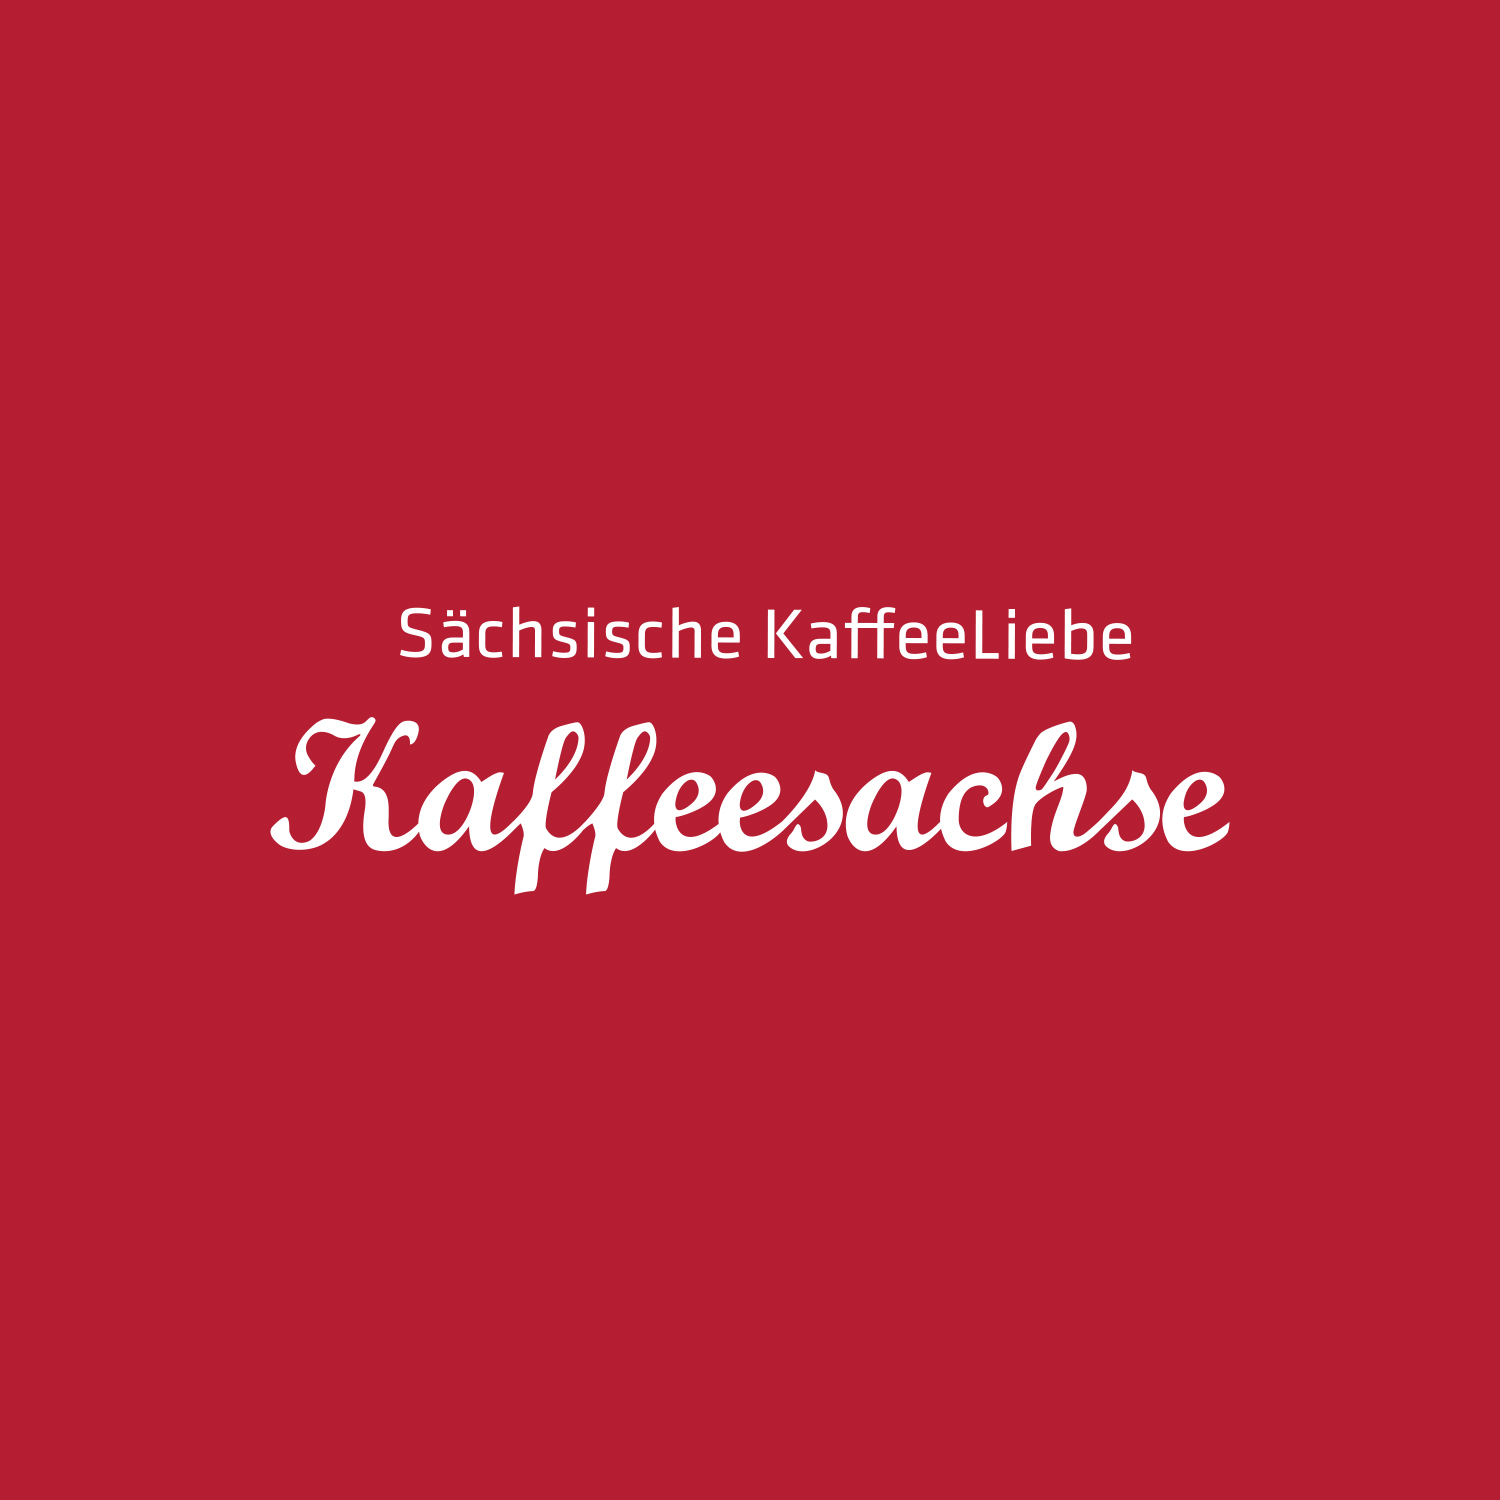 (c) Kaffeesachse.com